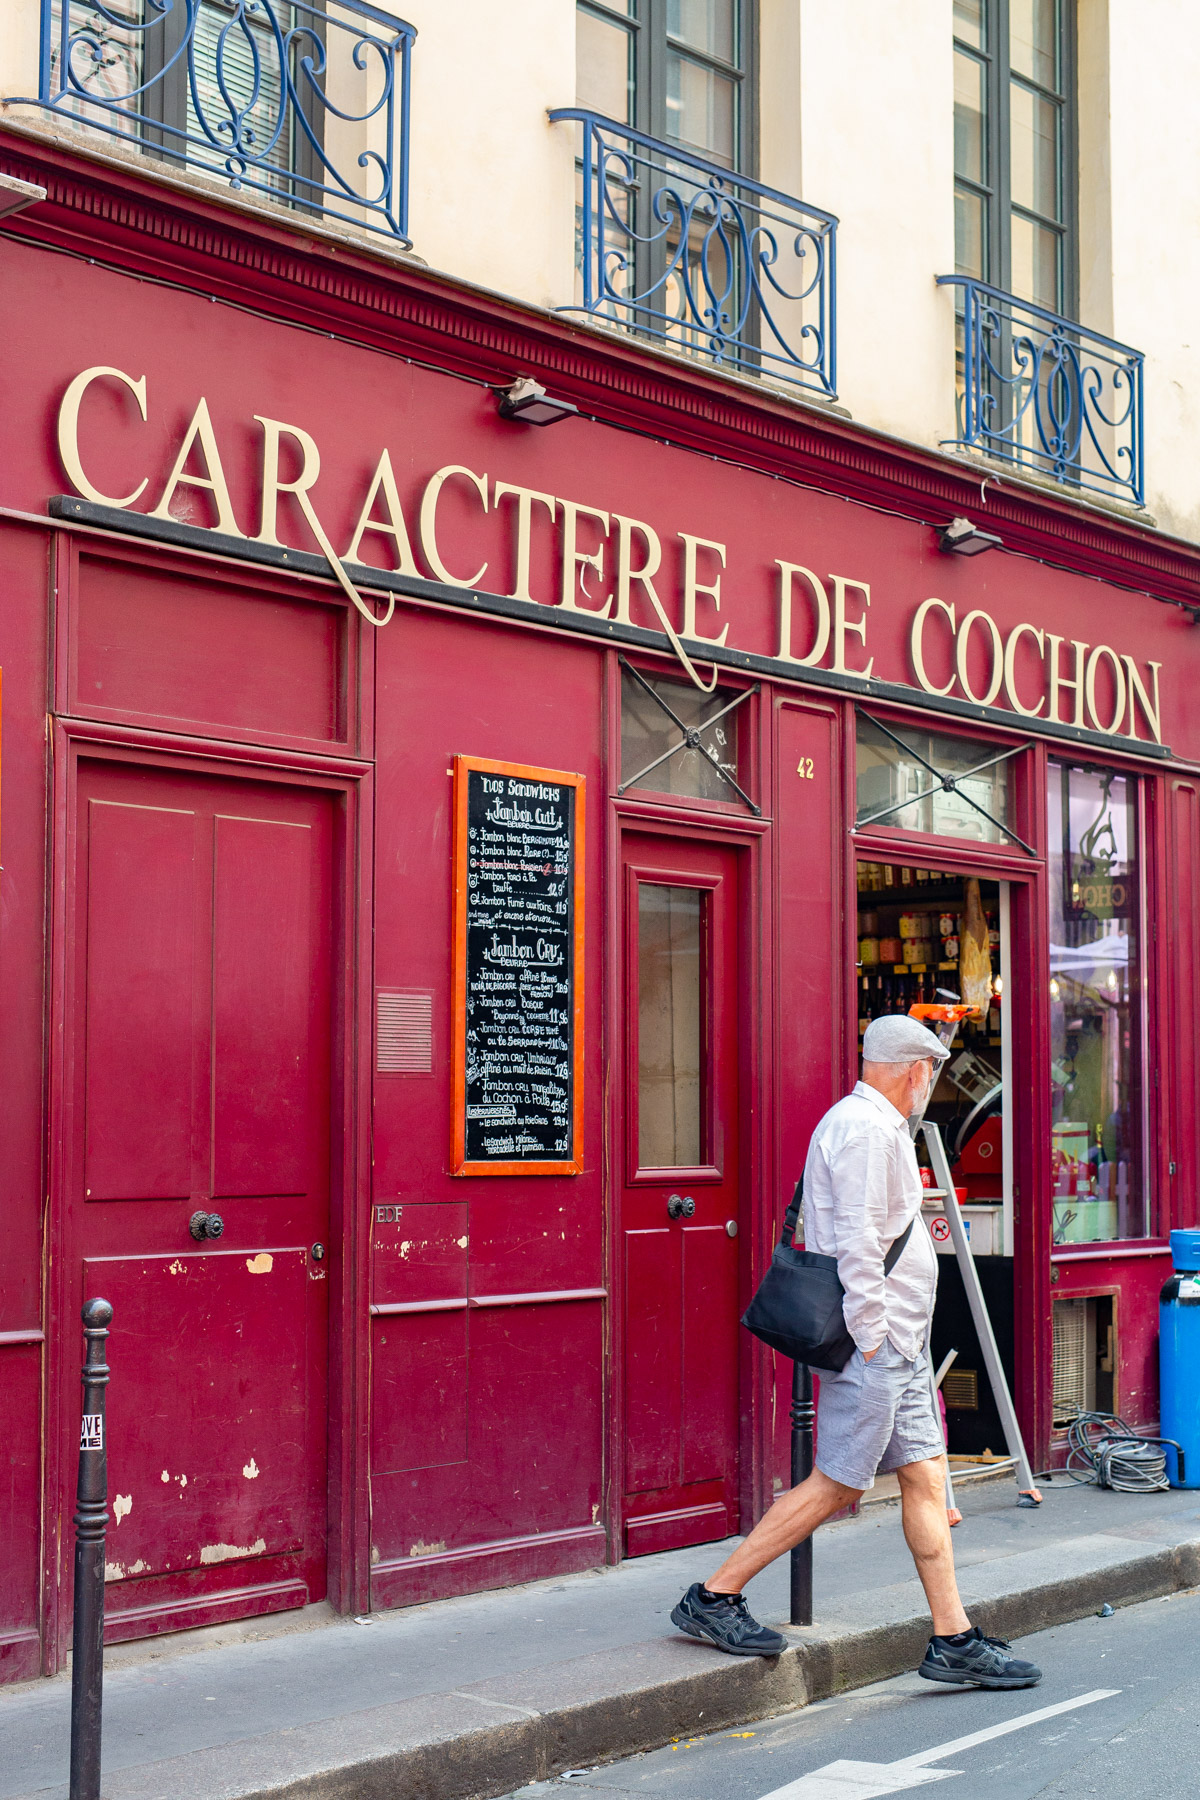 Caractere de Cochon
best cheap eats Paris 